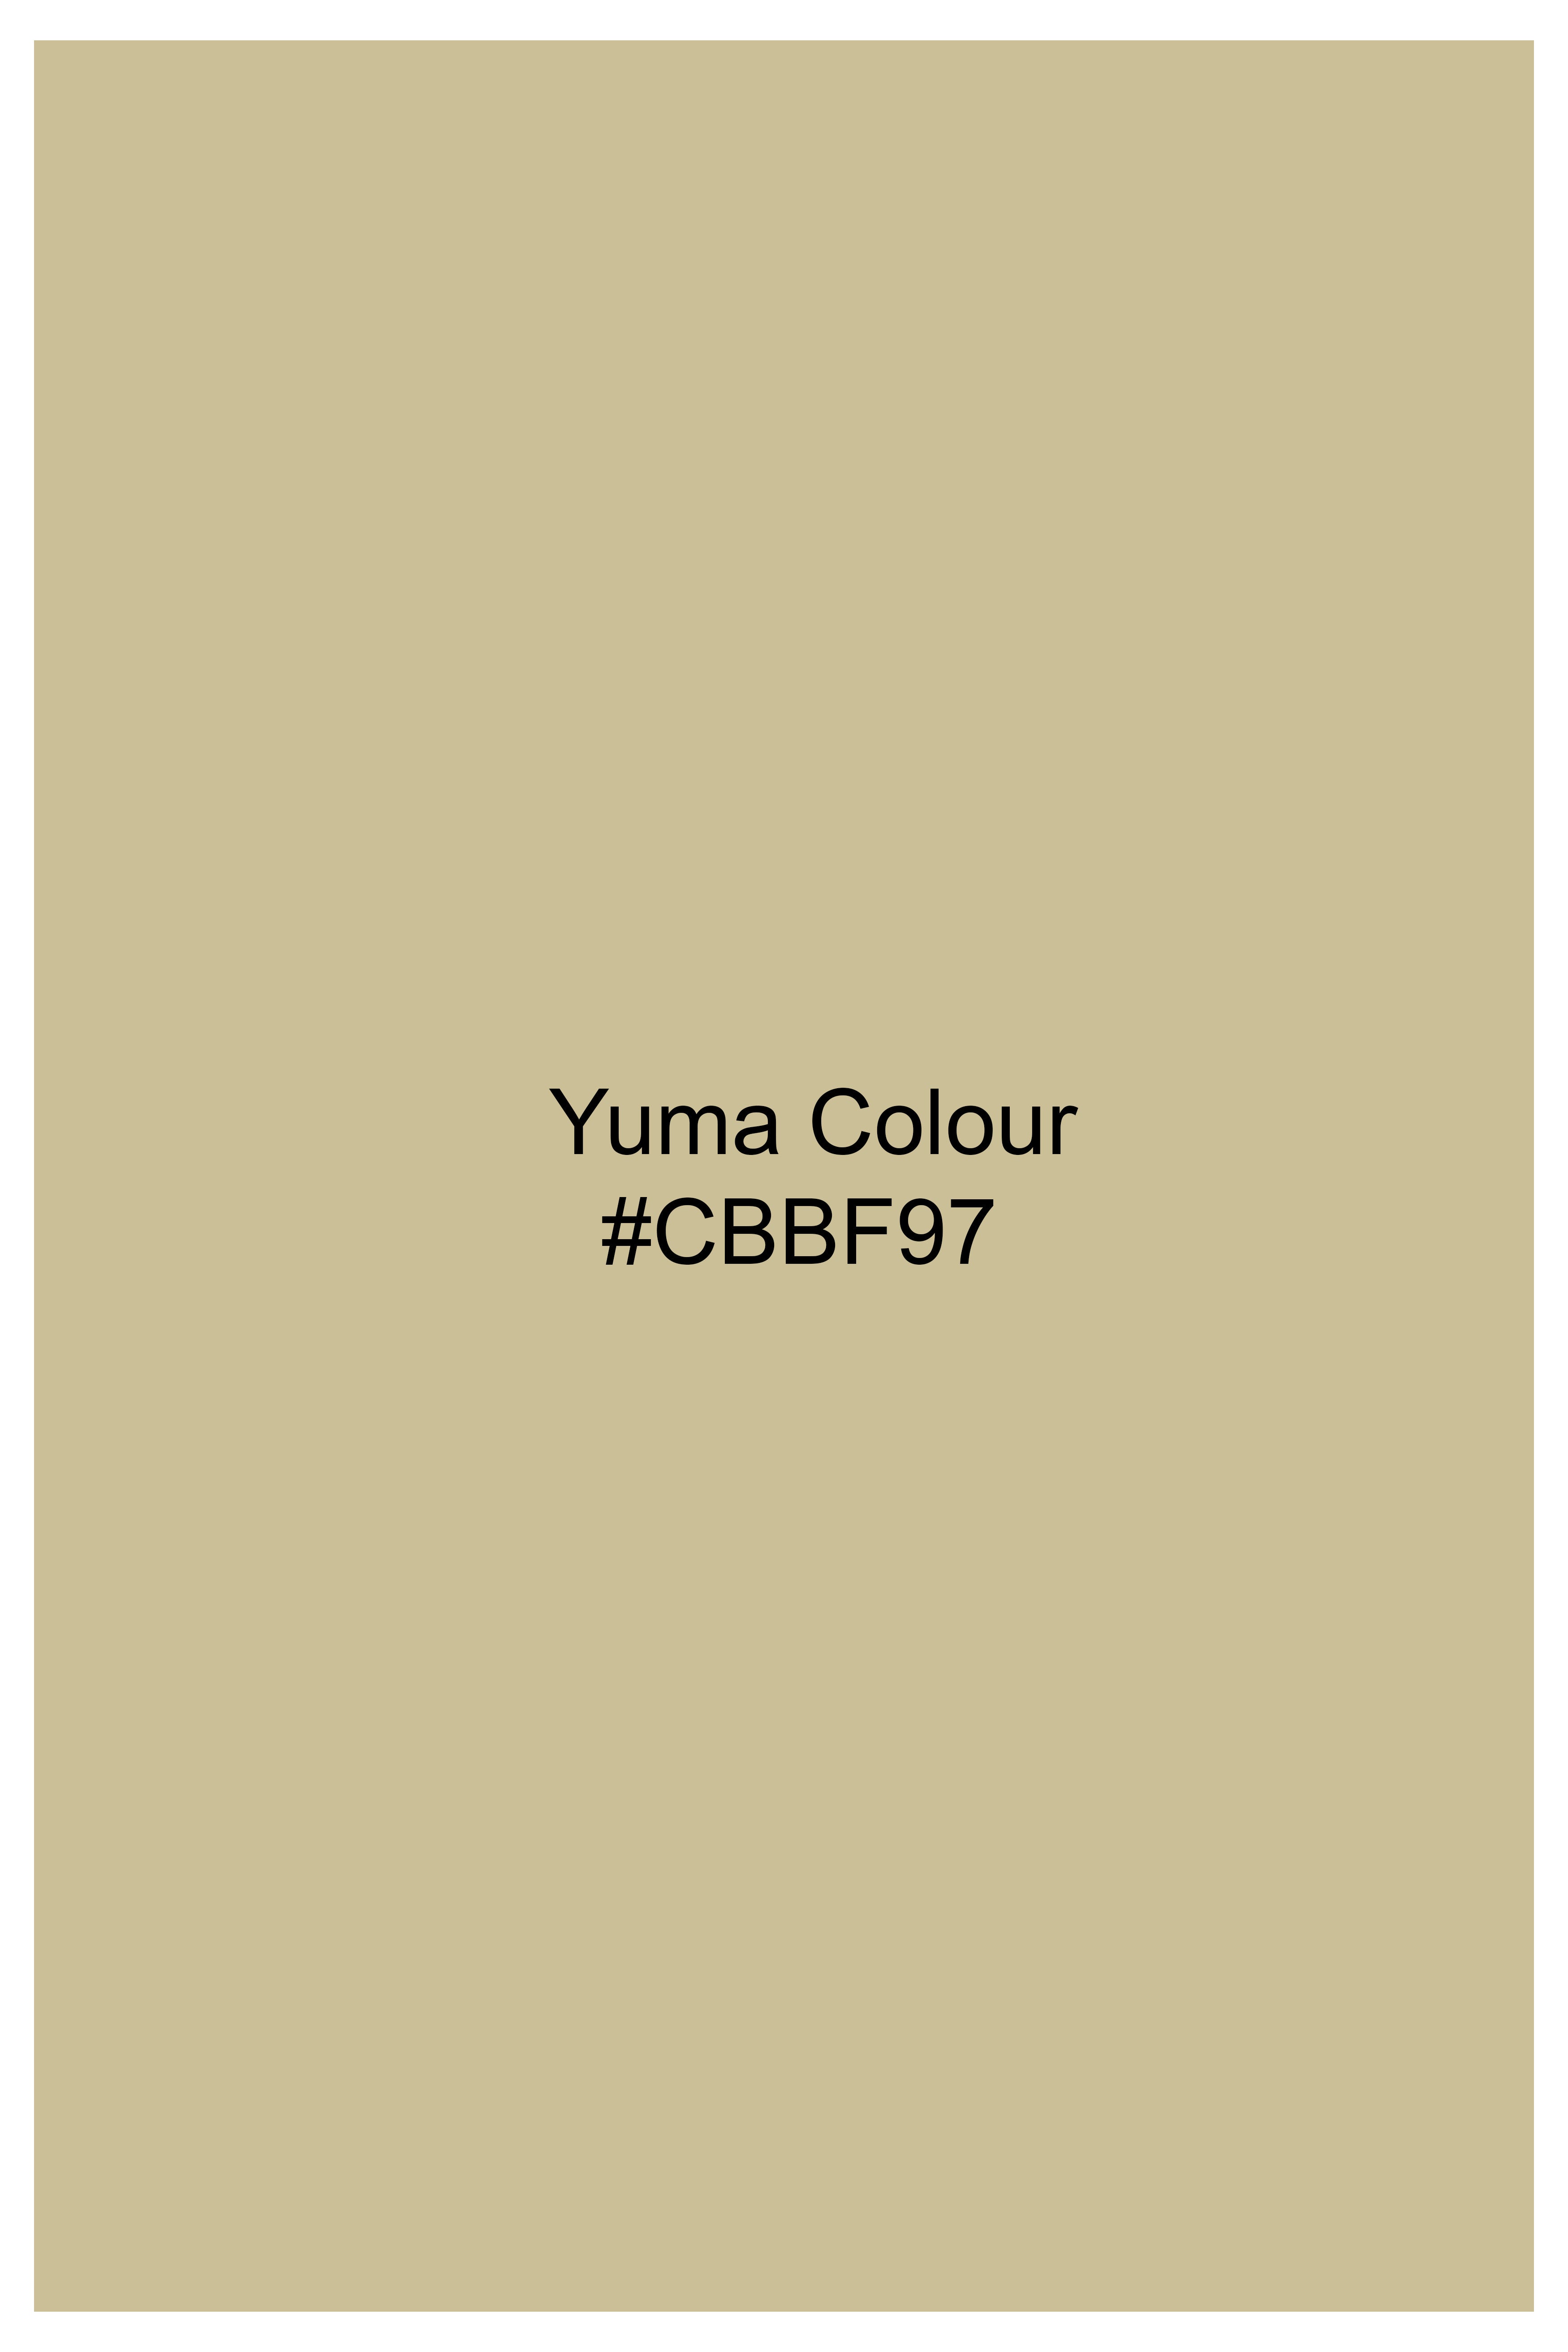 Yuma Cream Wool Rich Waistcoat V2925-36, V2925-38, V2925-40, V2925-42, V2925-44, V2925-46, V2925-48, V2925-50, V2925-25, V2925-54, V2925-56, V2925-58, V2925-60